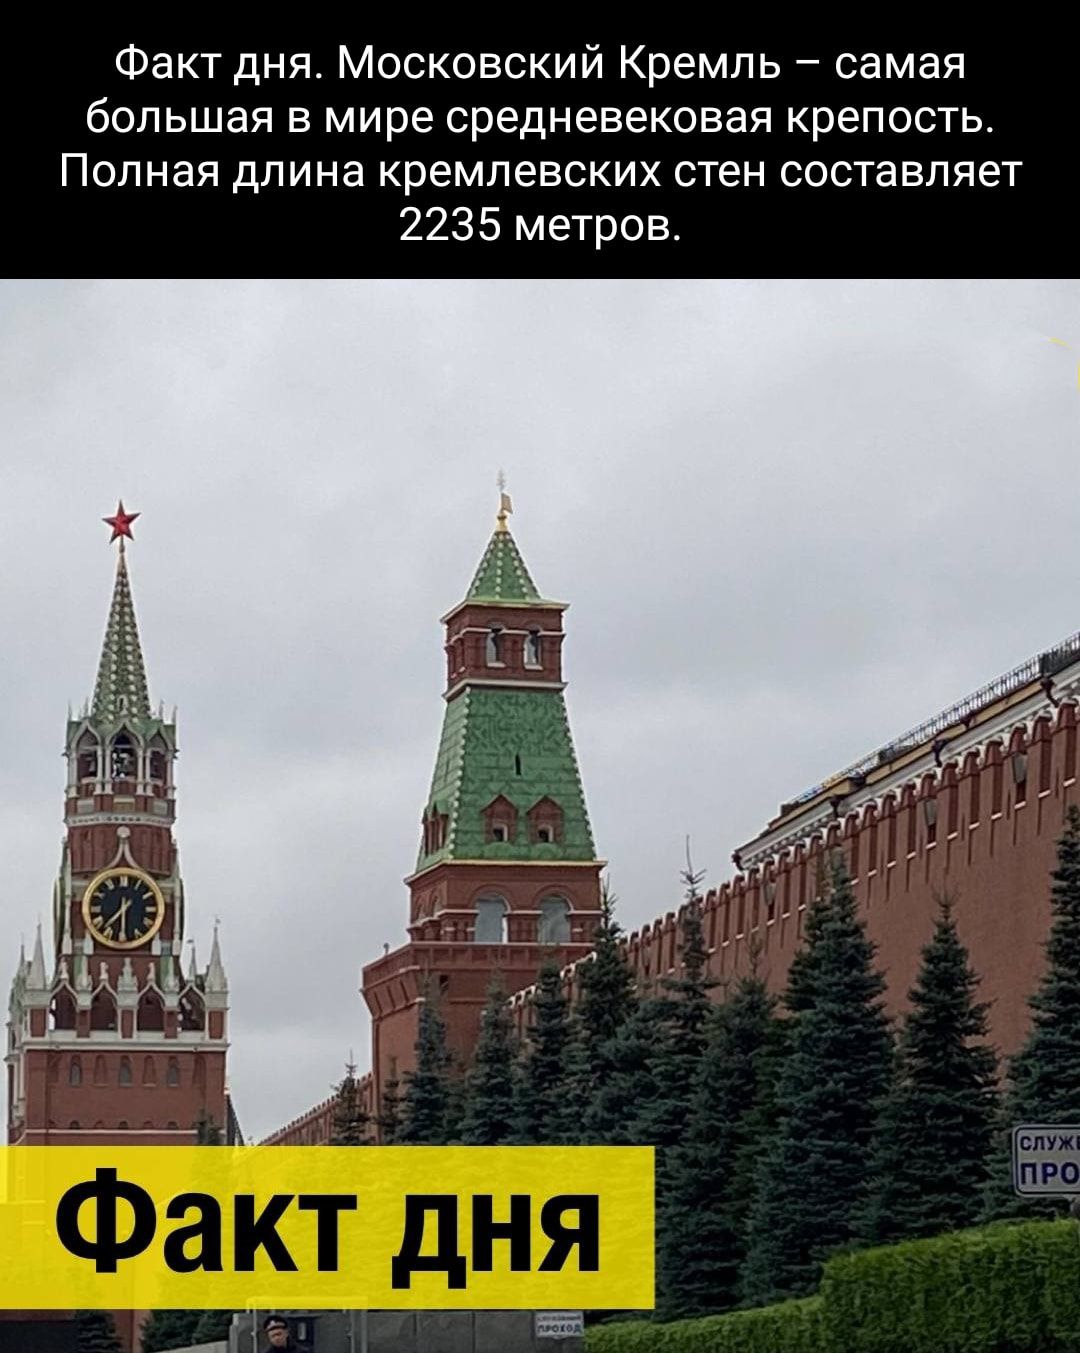 Факт дня Московский Кремль самая большая В МИРЕ средневековая крепость ПОПНЗЯ дПИНа КРЕМПЕЕСКИХ СТЕН составляет 2235 метров